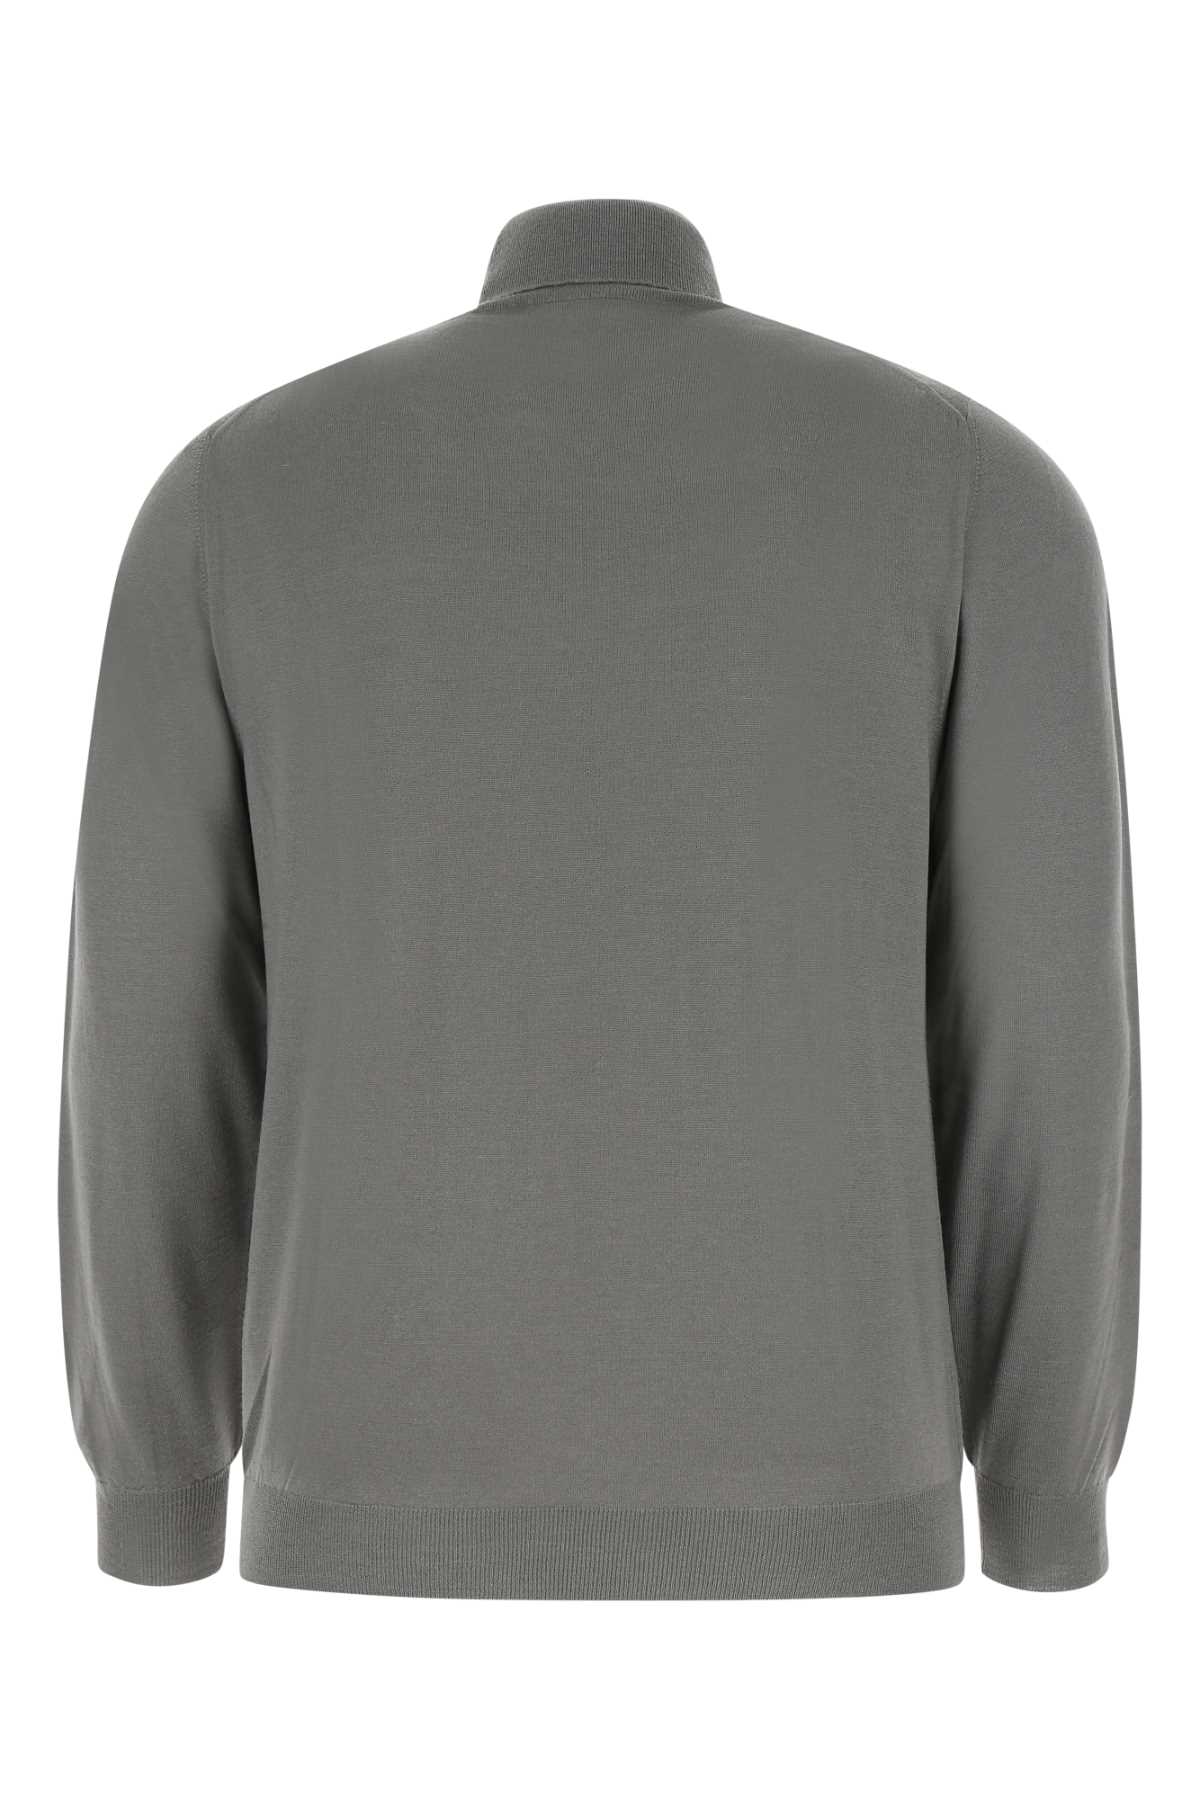 Fedeli Grey Wool Sweater In 51